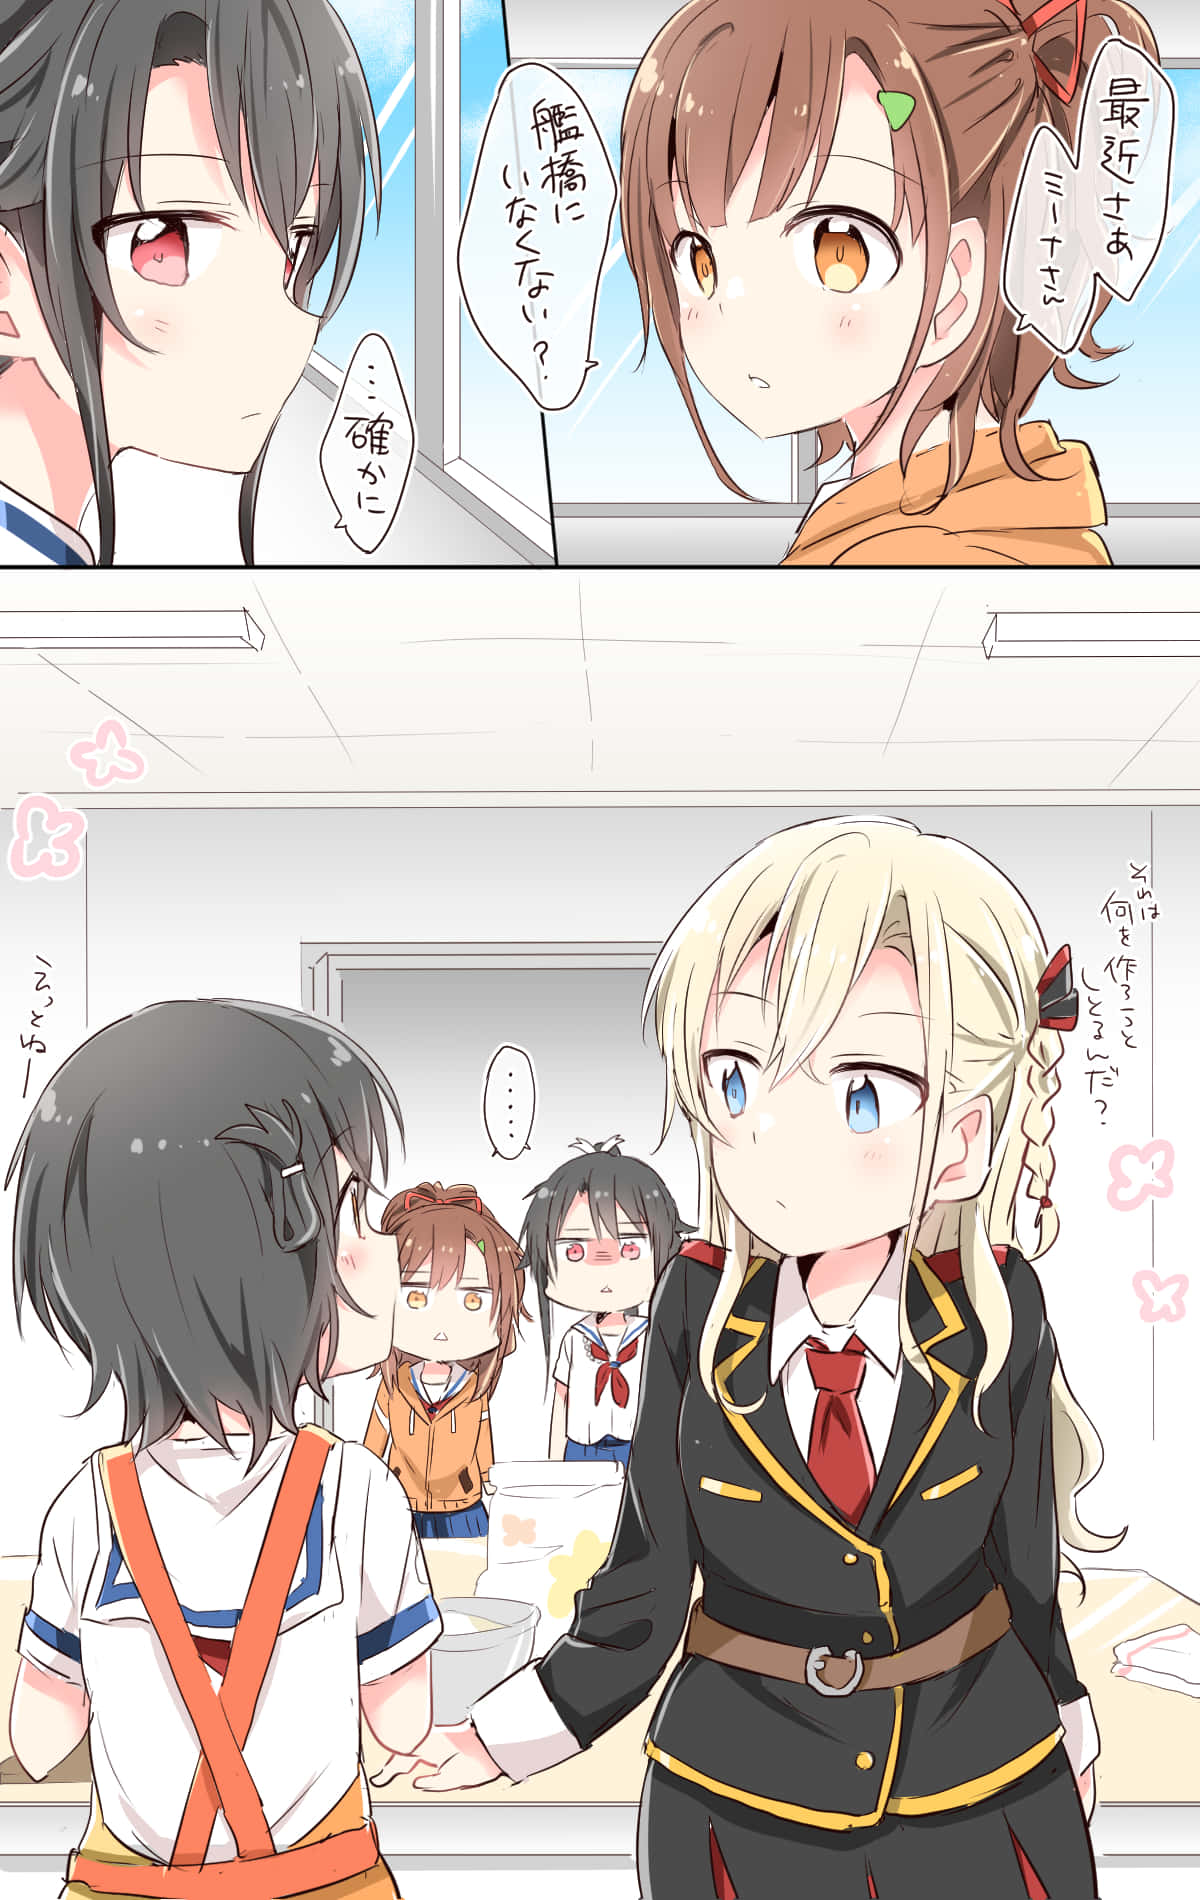 Anime Schoolgirls Interaction Wallpaper